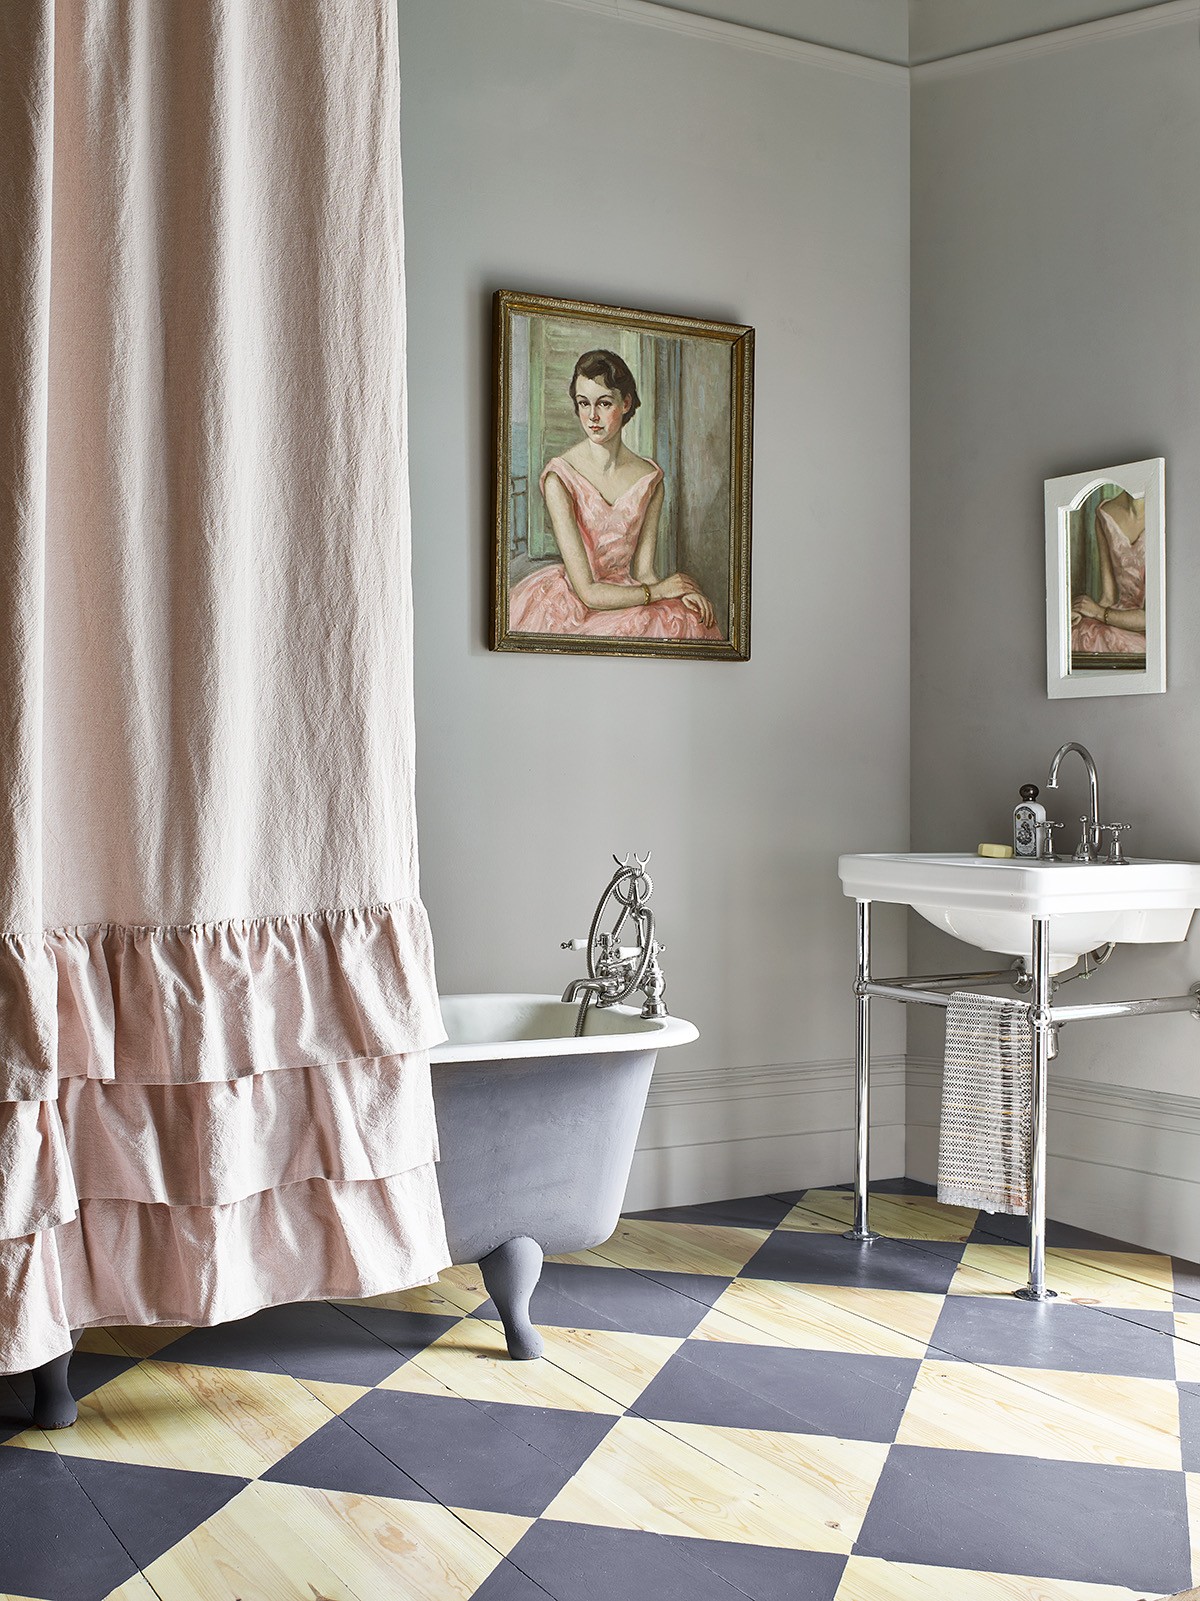 Banheira vitoriana: 6 banheiros charmosos decorados com a peça (Foto: Divulgação)